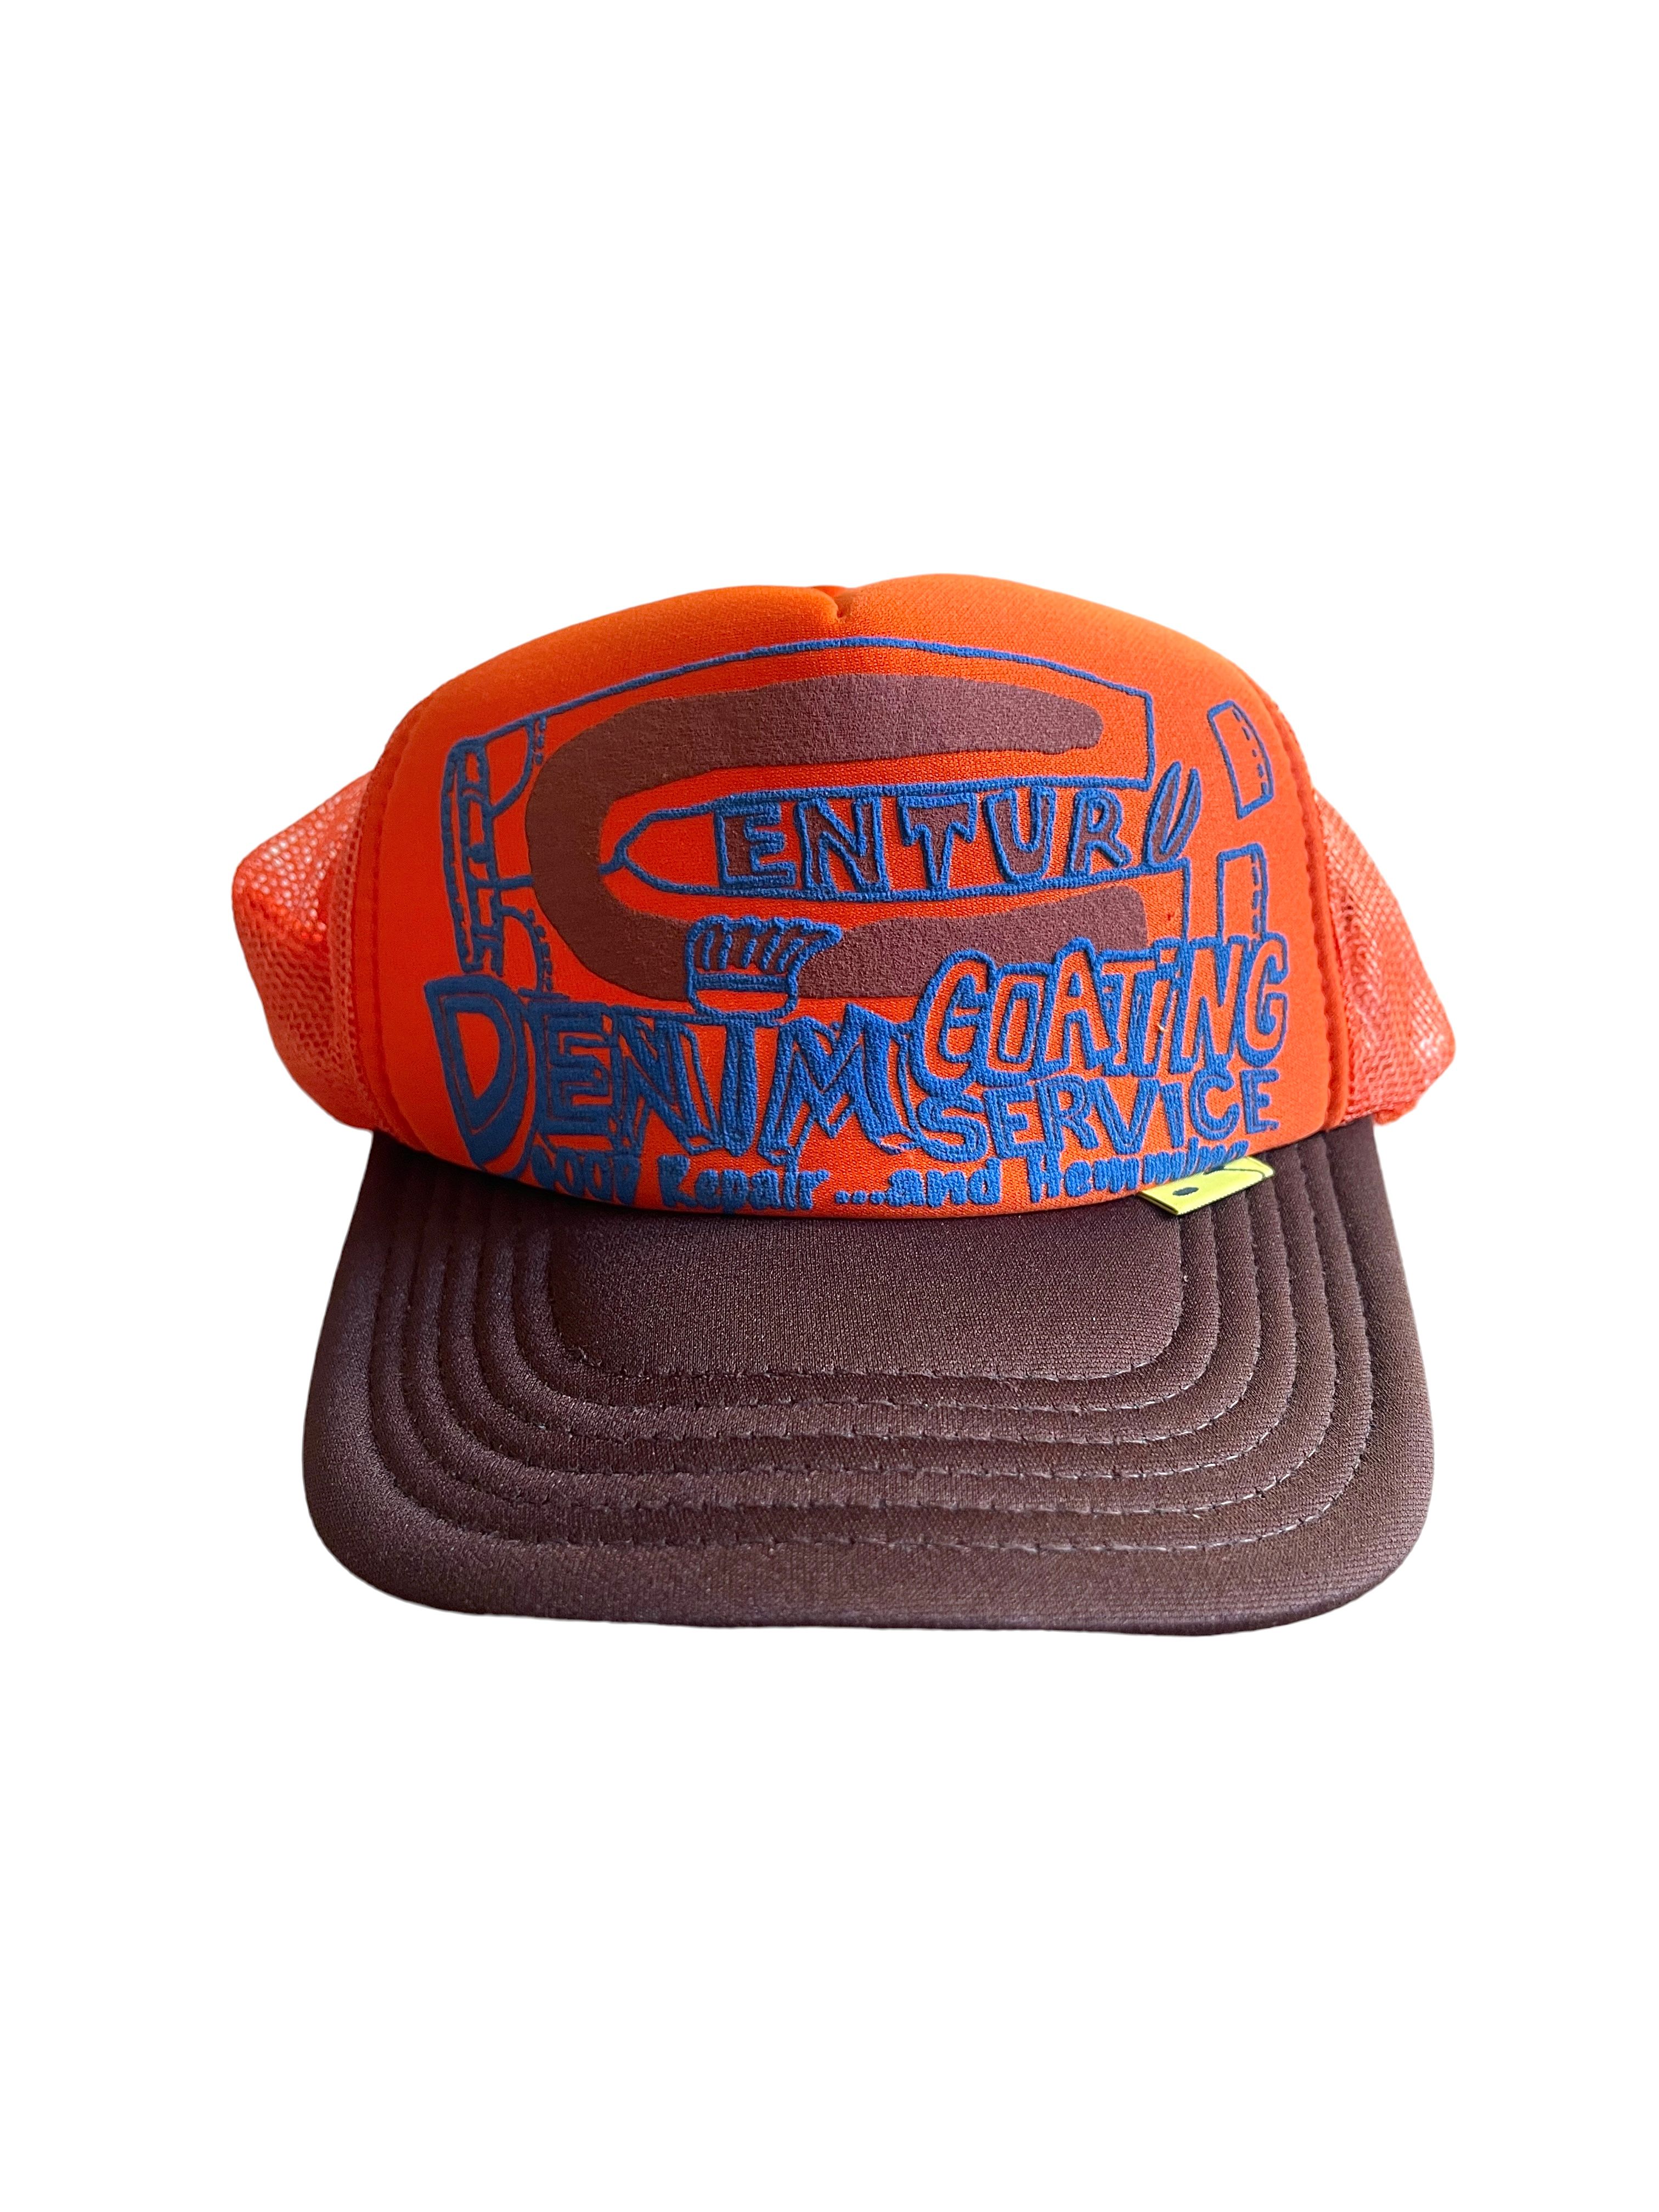 Pre-owned Kapital Tokyo Exclusive Century Denim Coating Trucker Hat In Burgundy Orange